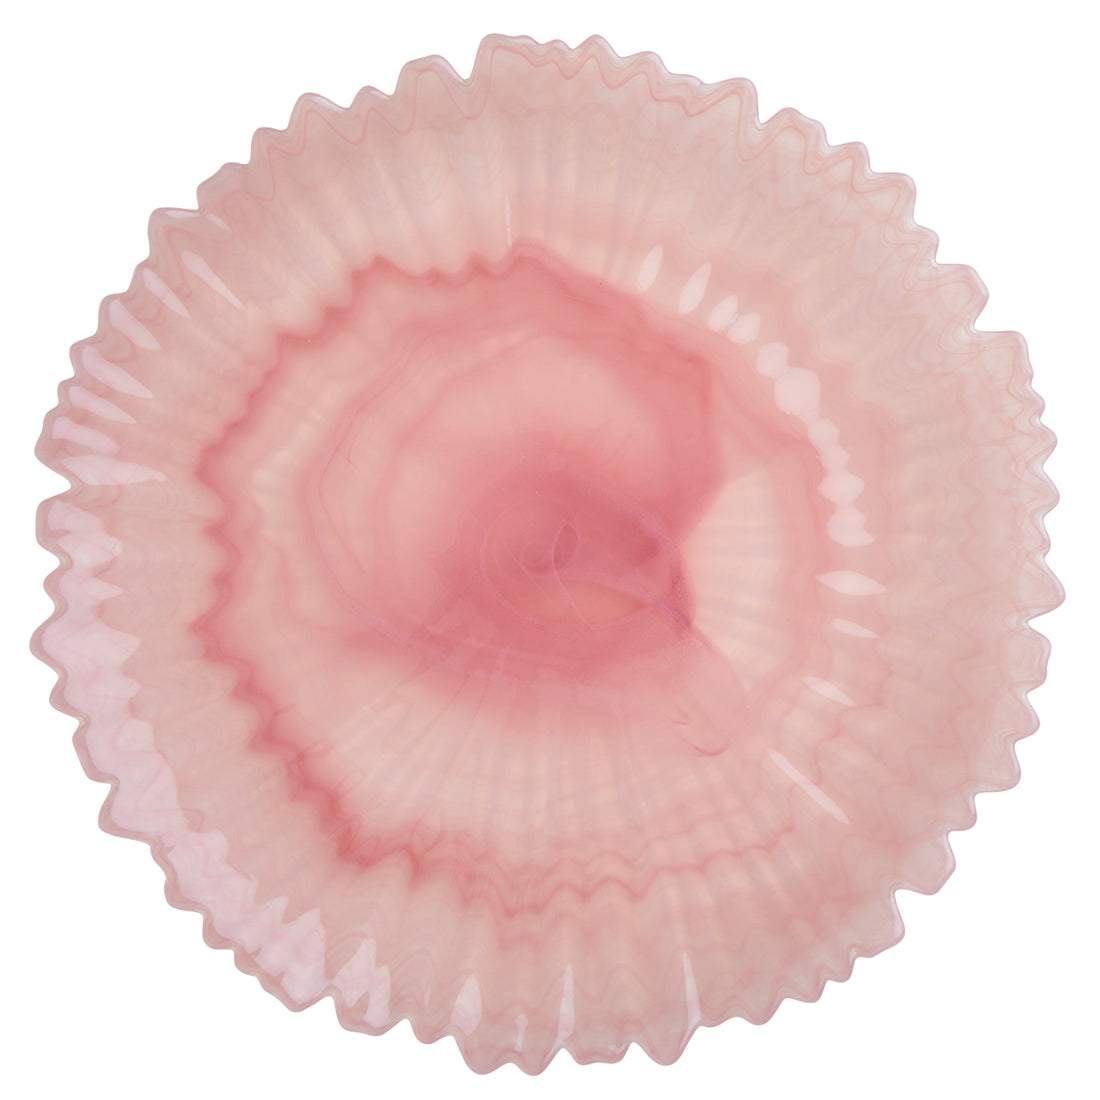 rice-dk-alabaster-glass-serving-platter-in-soft-pink-32cm-pink-rice-glser-ali-